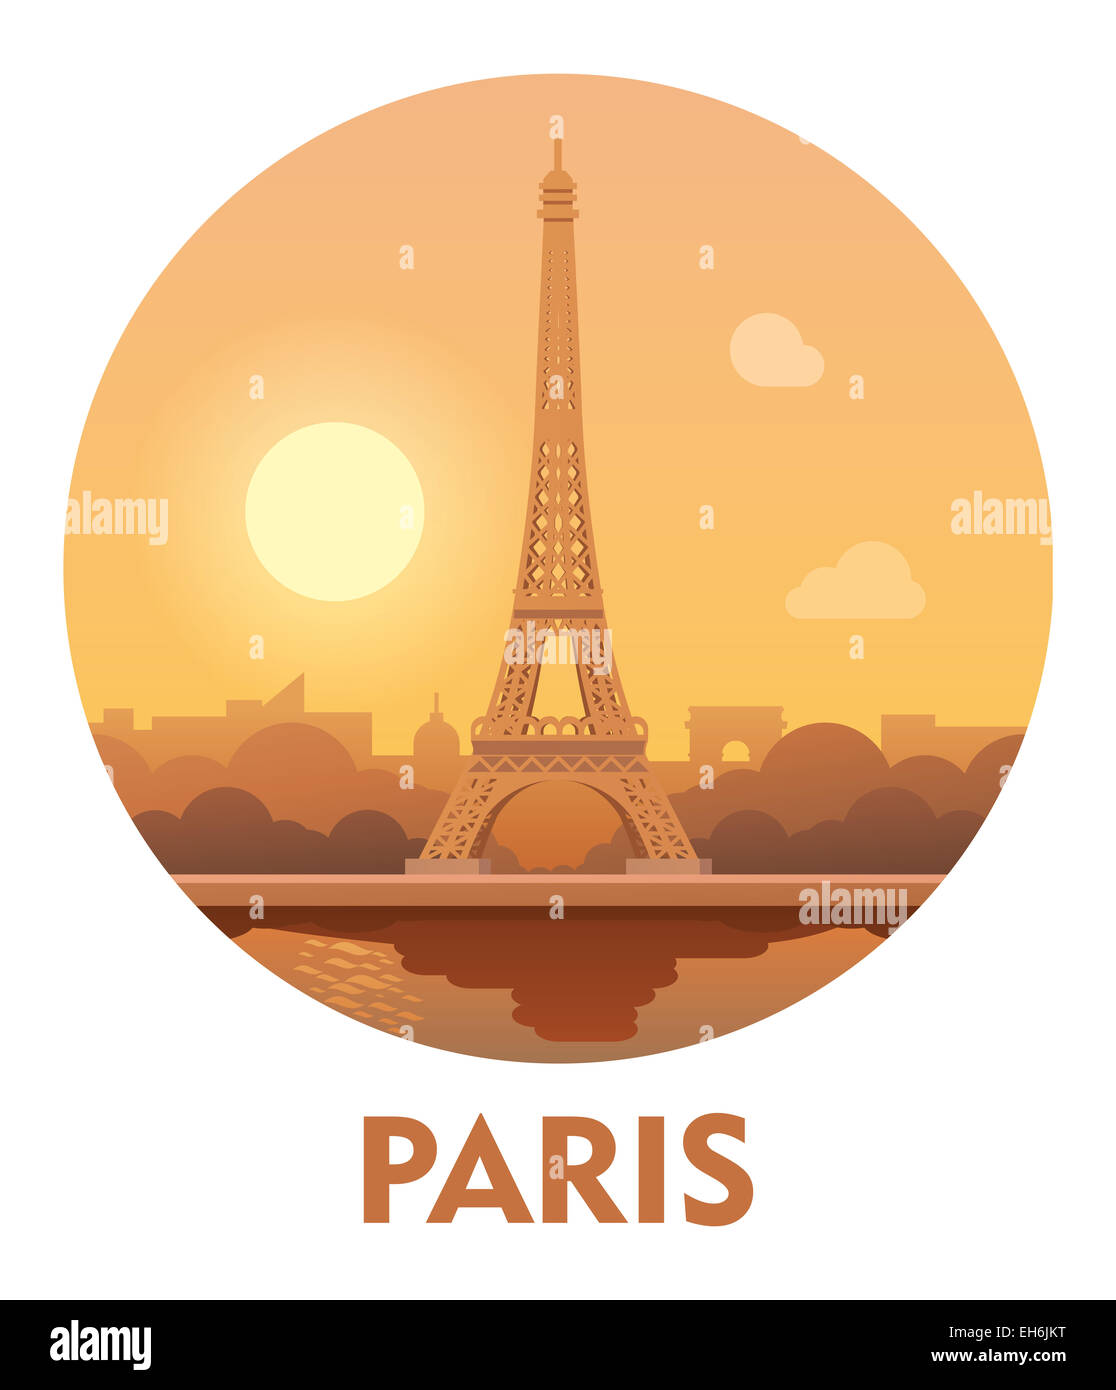 Travel destination Paris icon Stock Photo